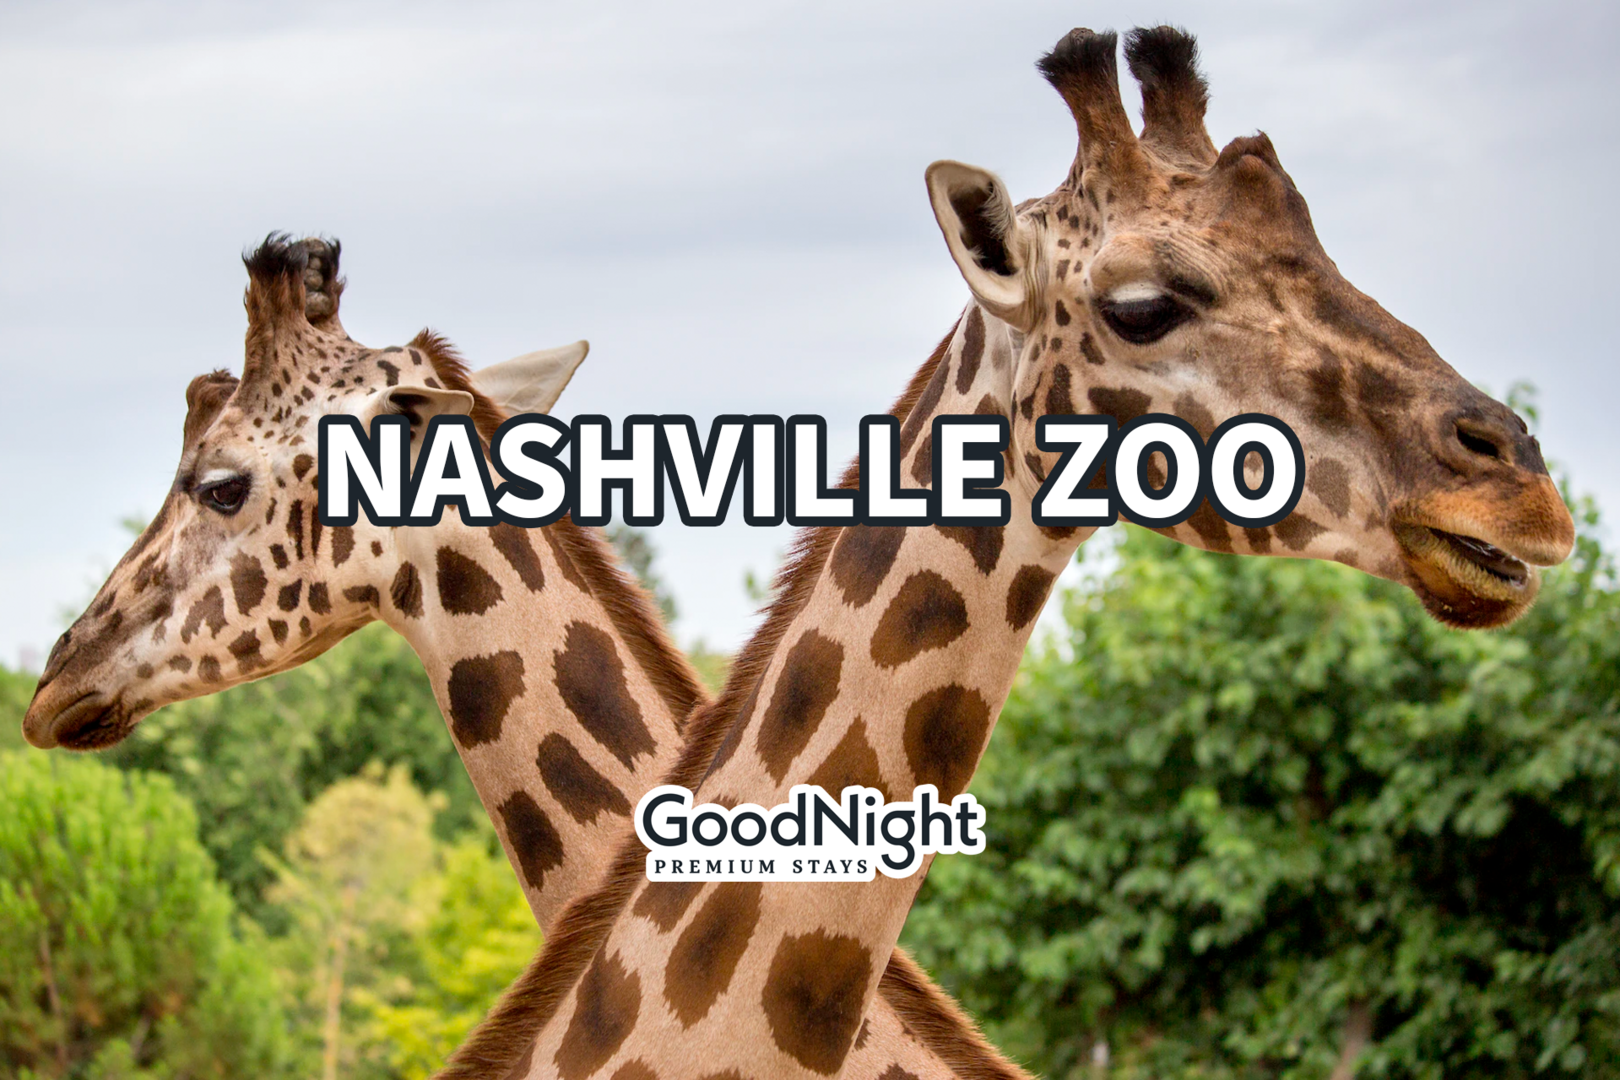 18 mins: Nashville Zoo